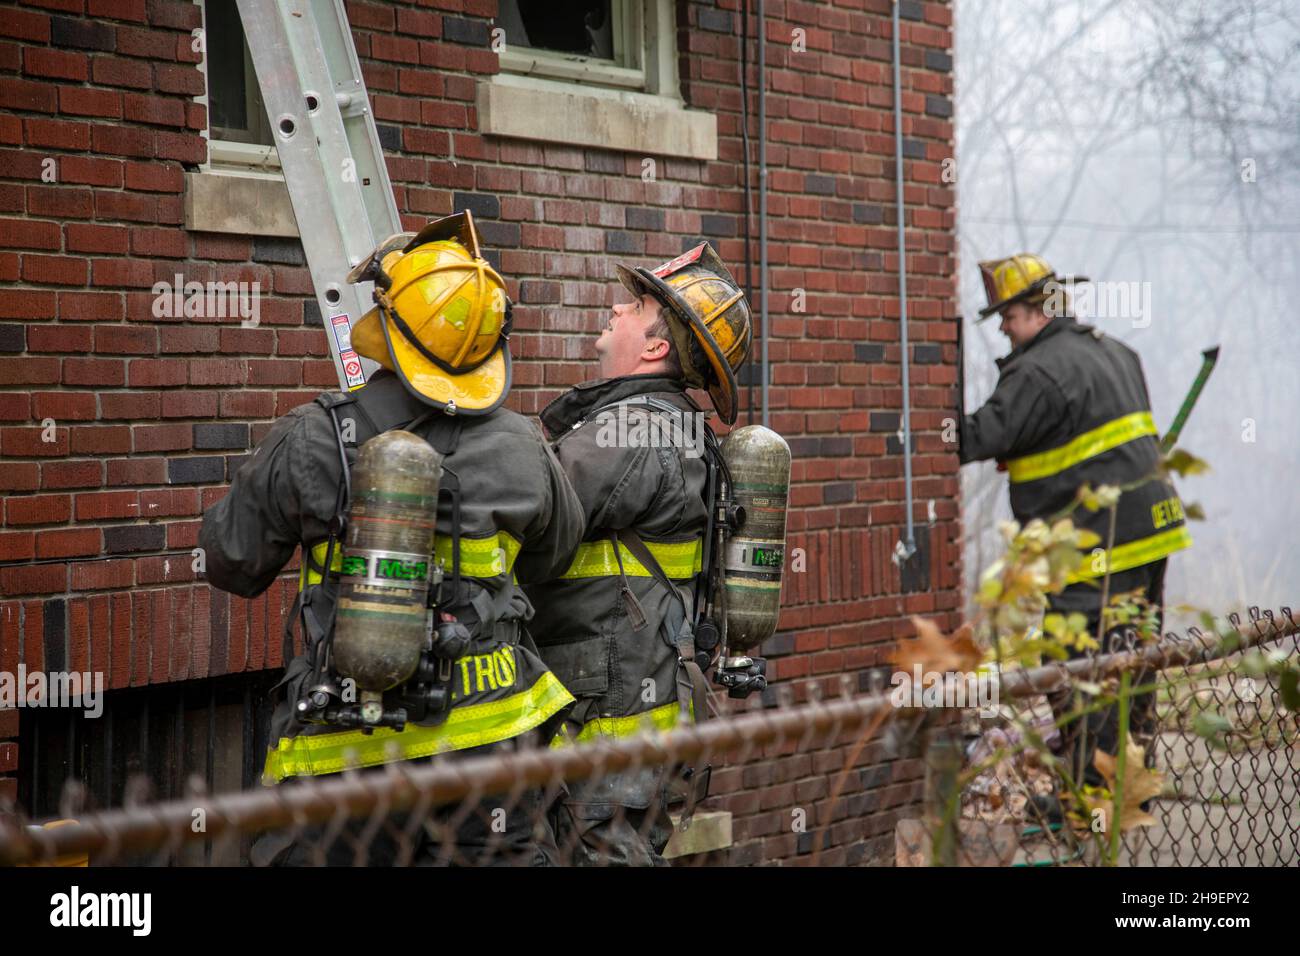 Detroit, Michigan - indossando bombole d'aria, vigili del fuoco, si allestiscono una scala mentre combattono un incendio che ha danneggiato una casa nel quartiere Morningside di Detroit. Foto Stock